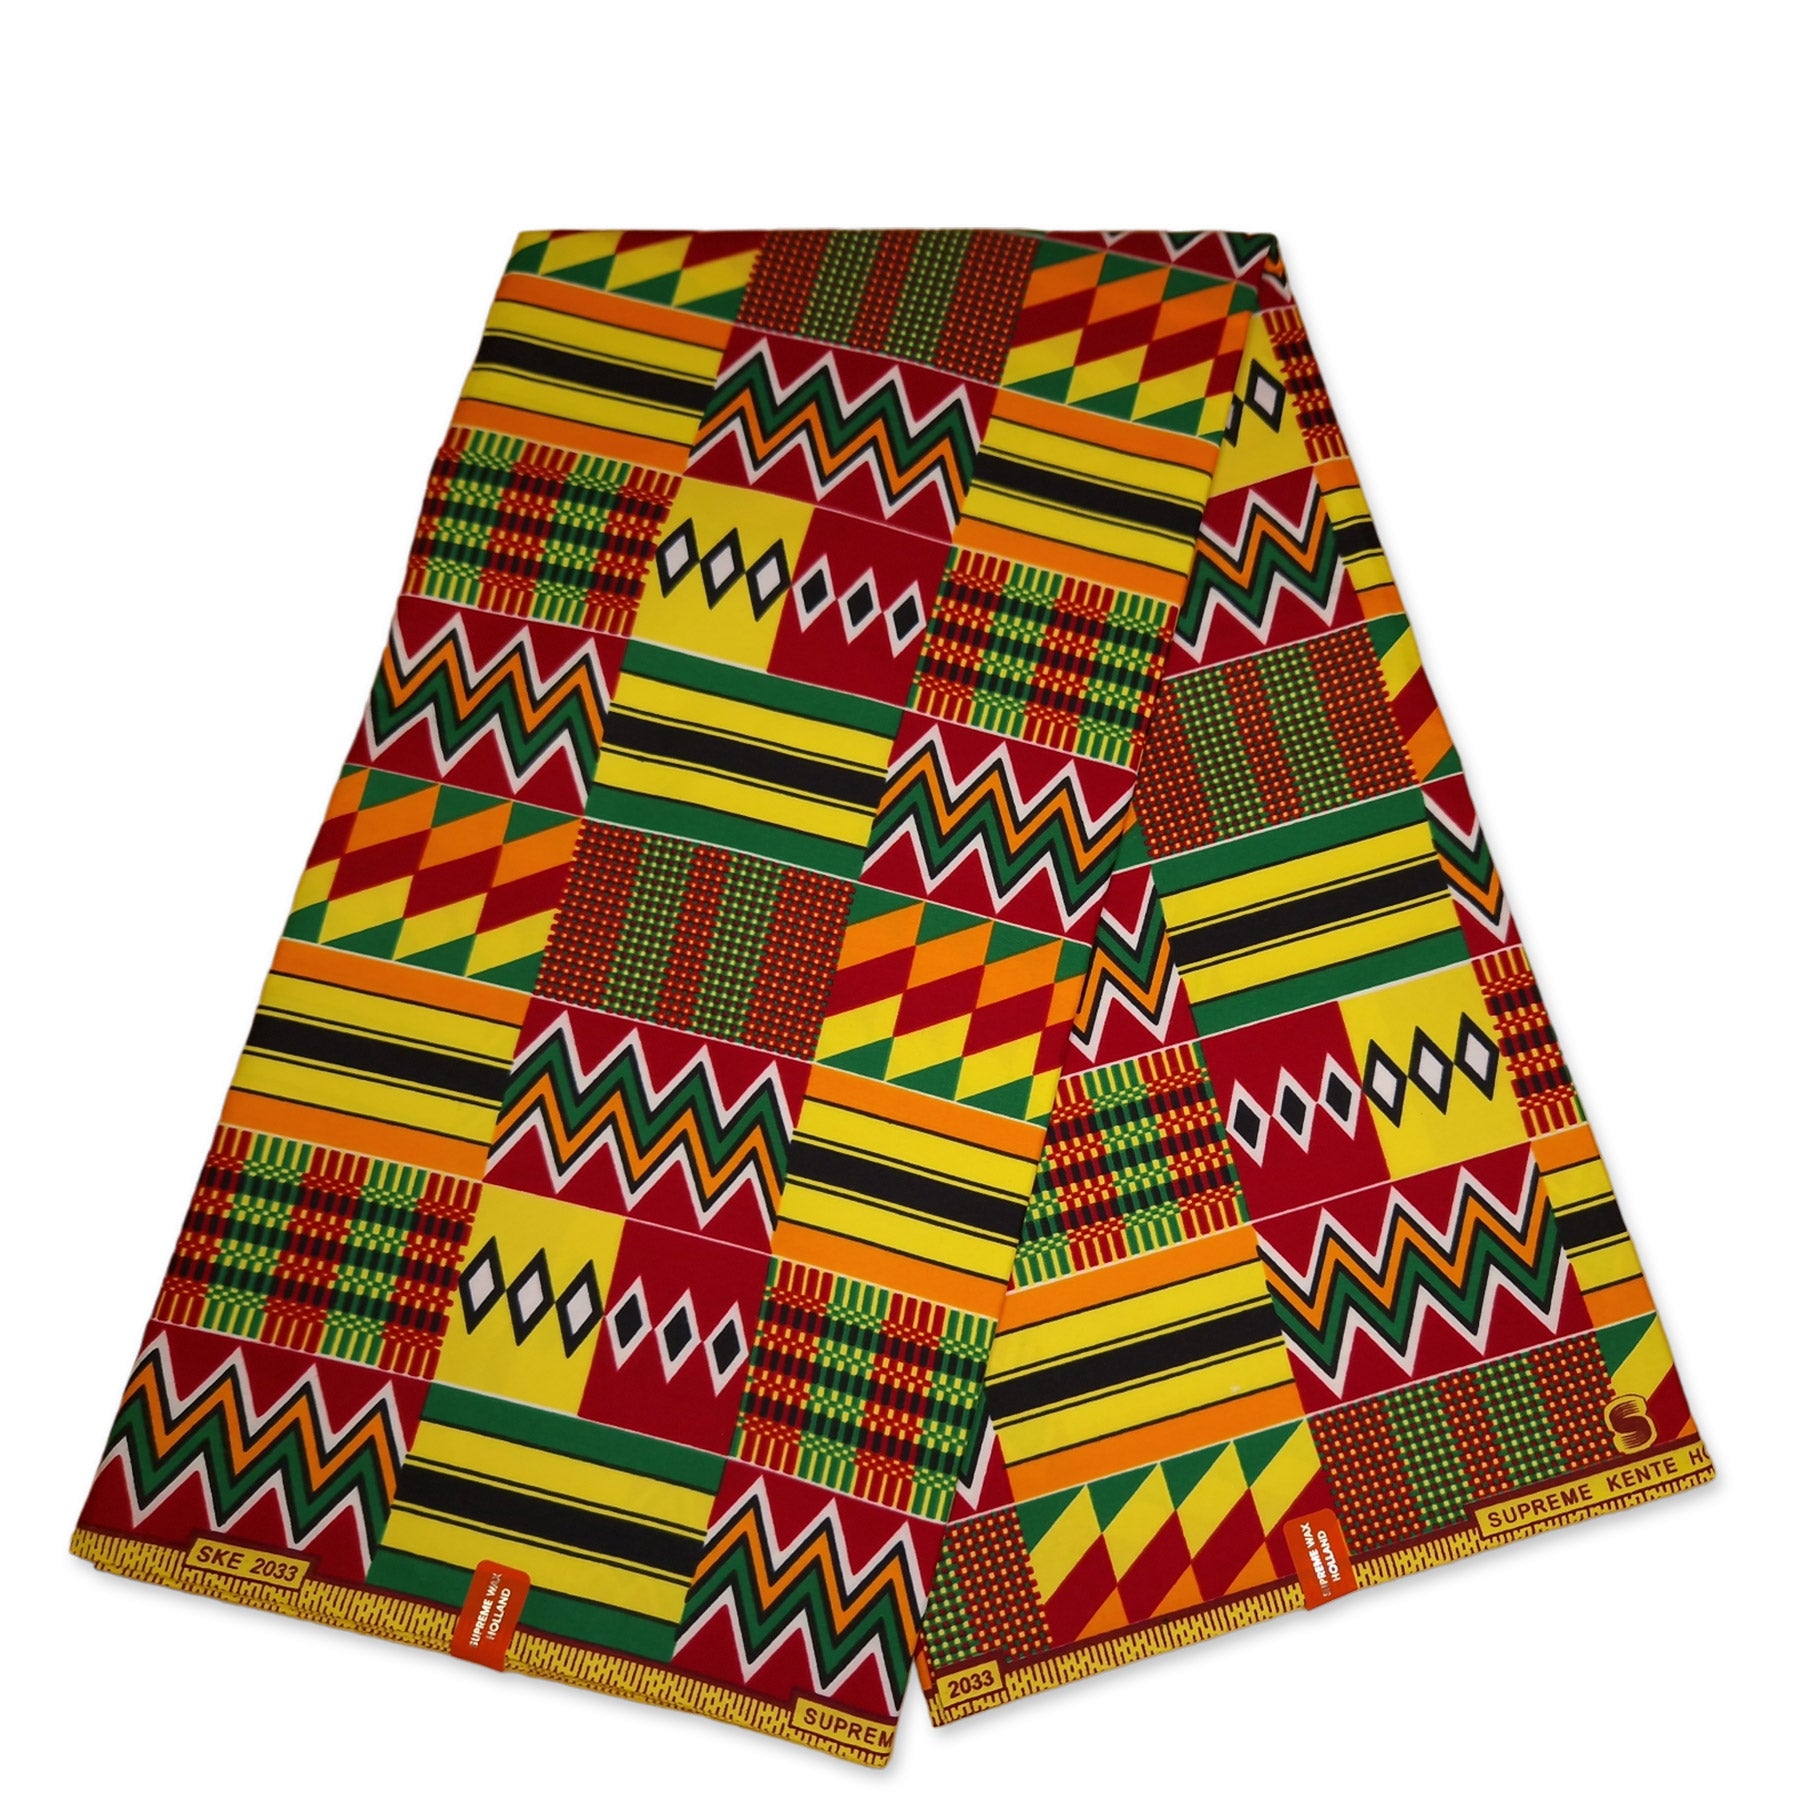 La tela africana wax Kente - Telas Africanas wax para DIY y patchwork